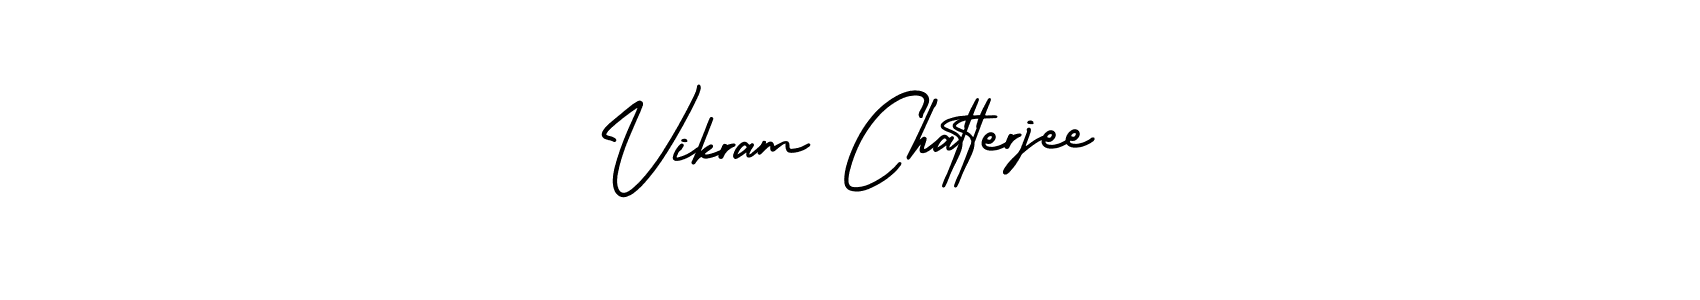 97+ Vikram Chatterjee Name Signature Style Ideas | Cool Digital Signature